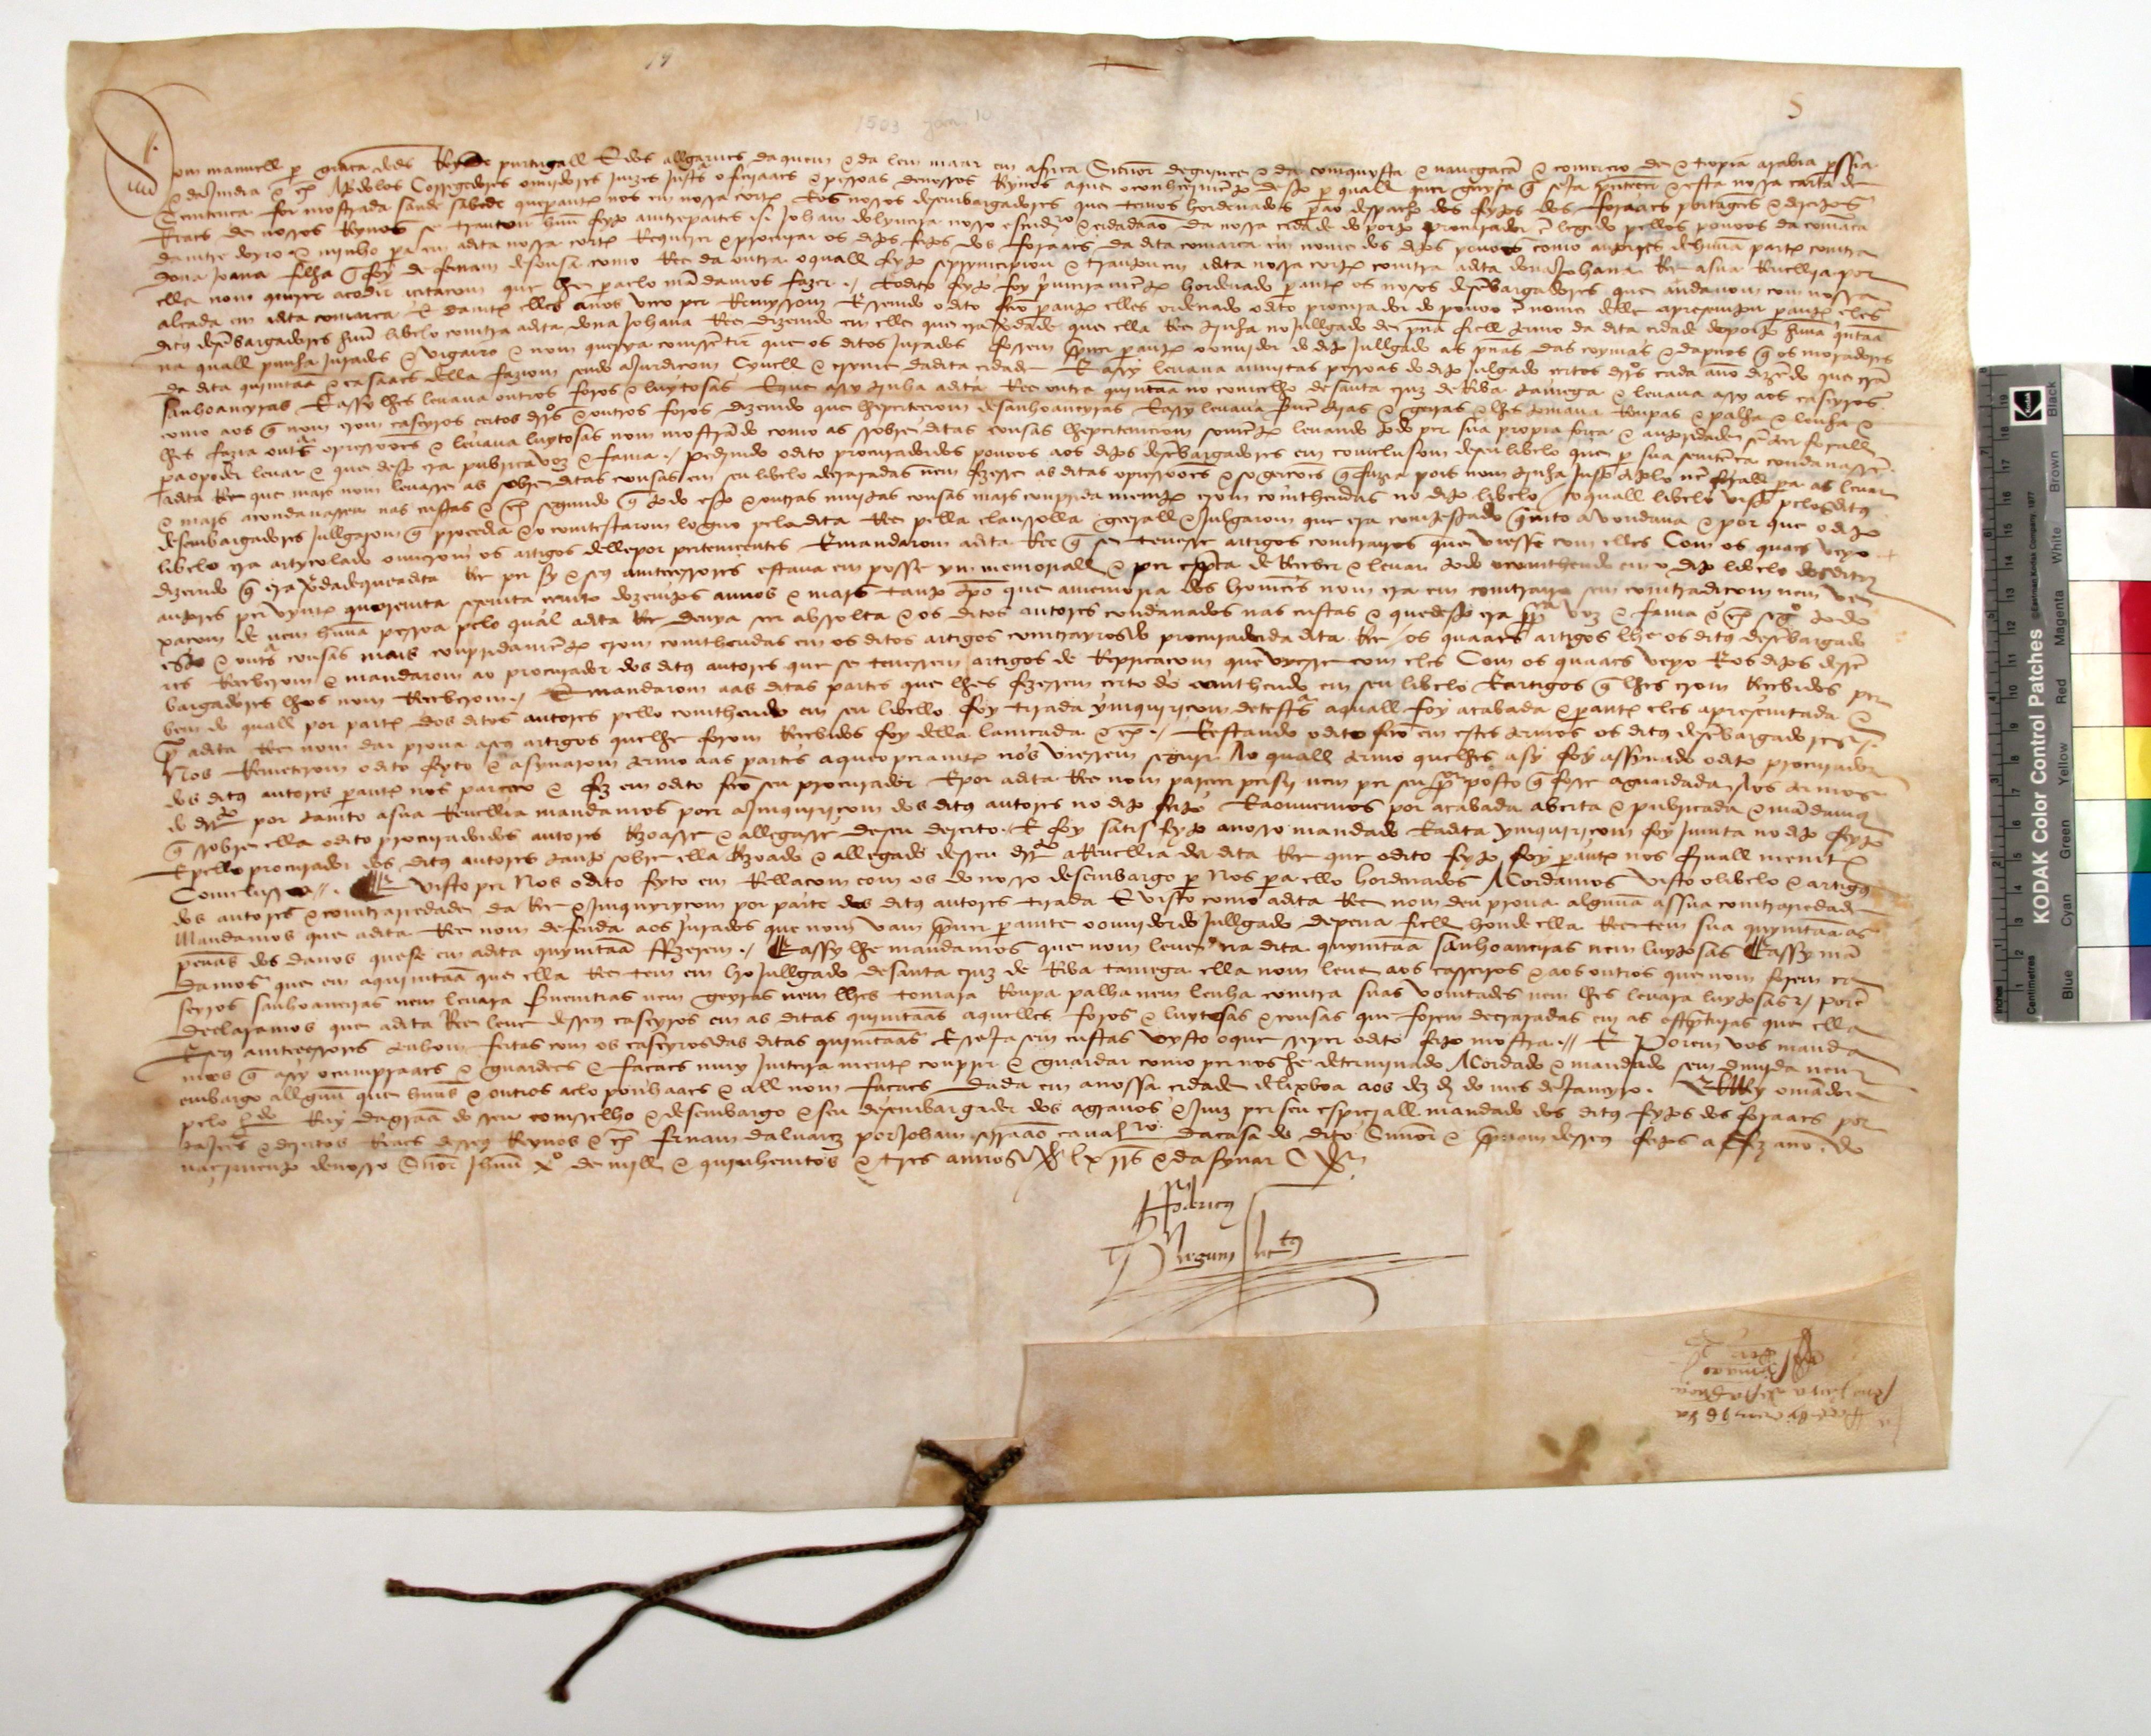 [Carta régia de D. Manuel I, em que delibera acerca de uma contenda entre os povos da comarca de Entre Douro e Minho e D. Joana]